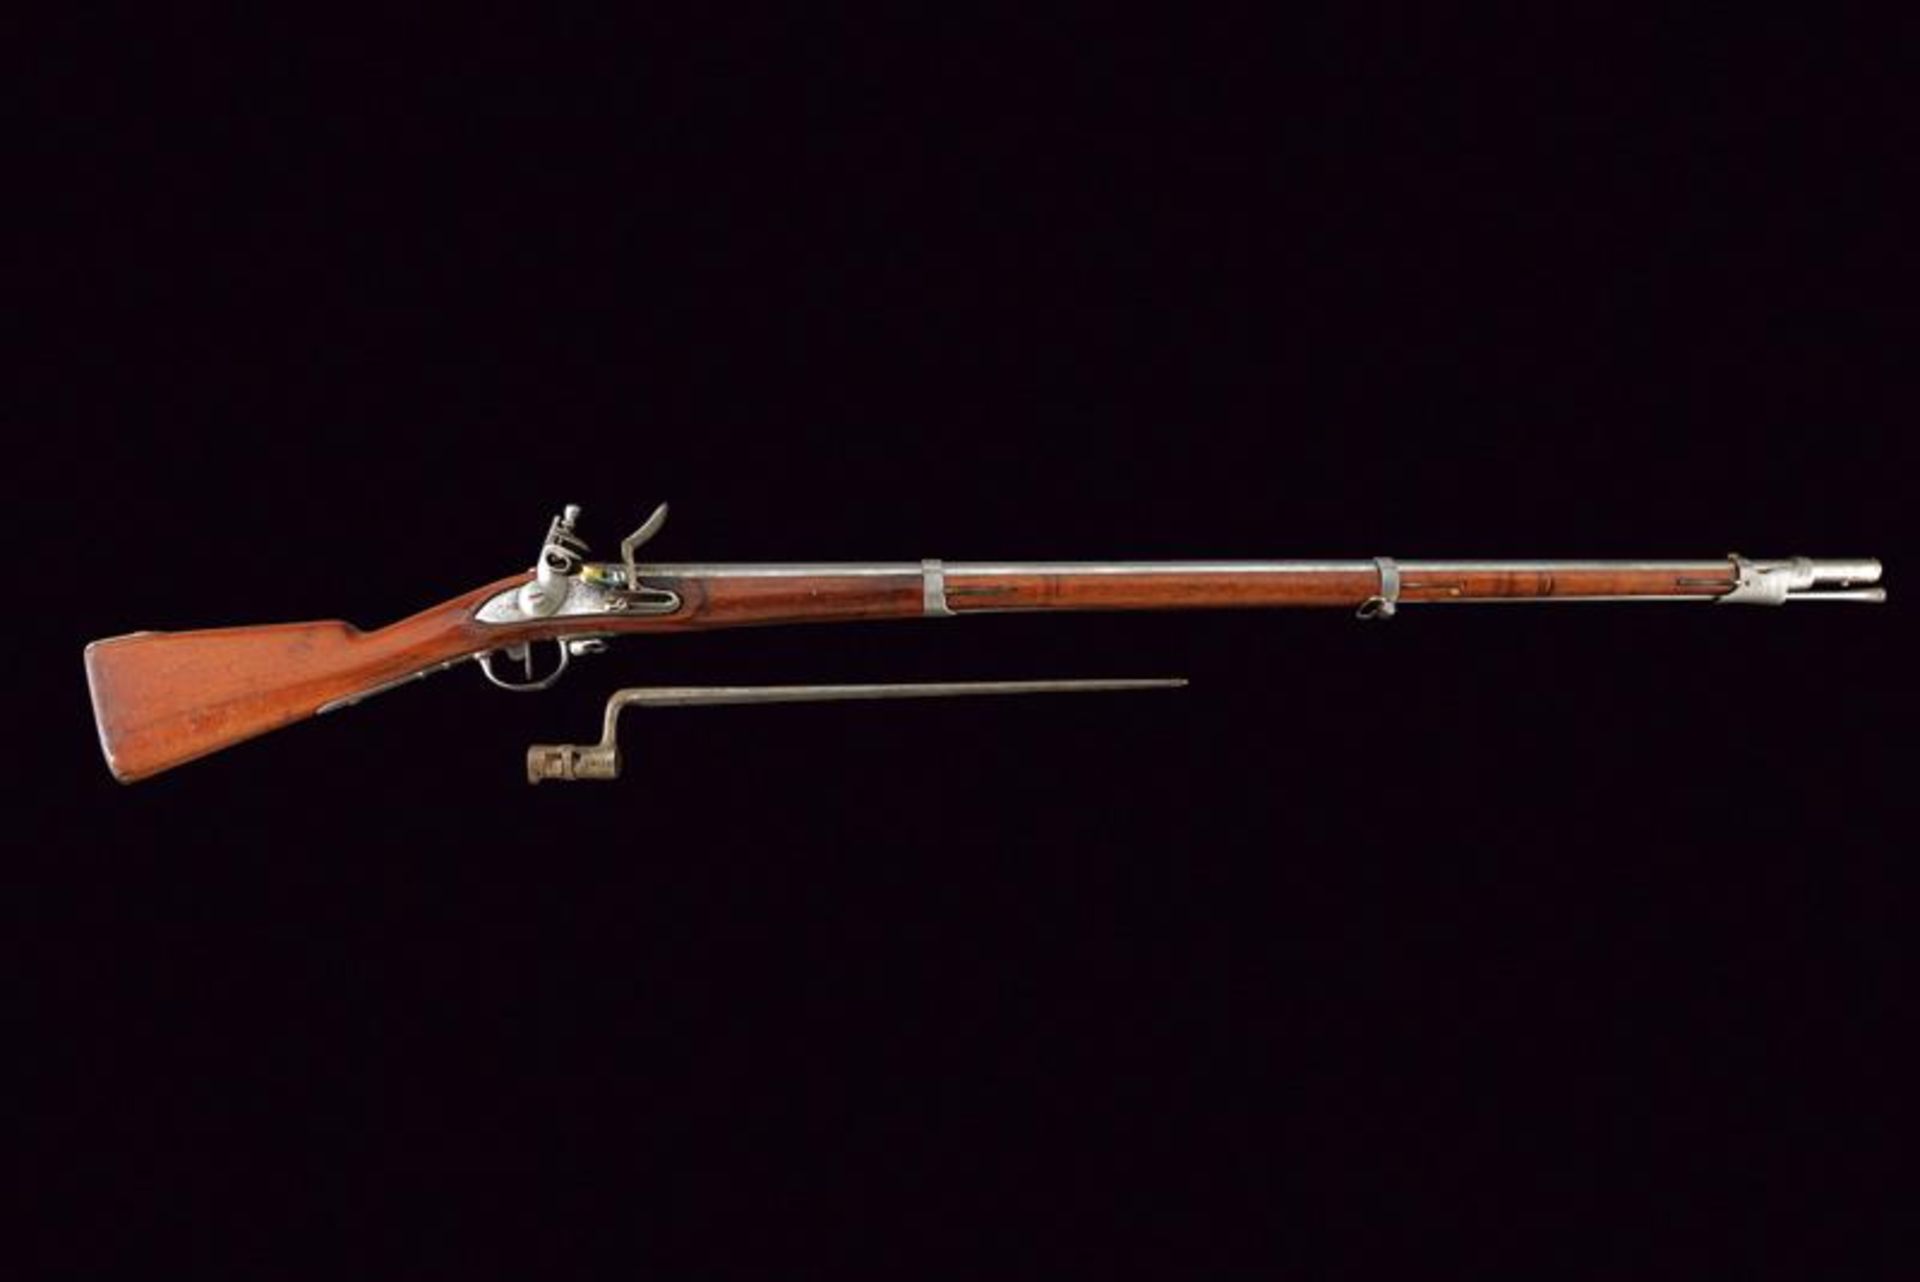 A 1777 model flintlock gun with bayonet - Bild 4 aus 4